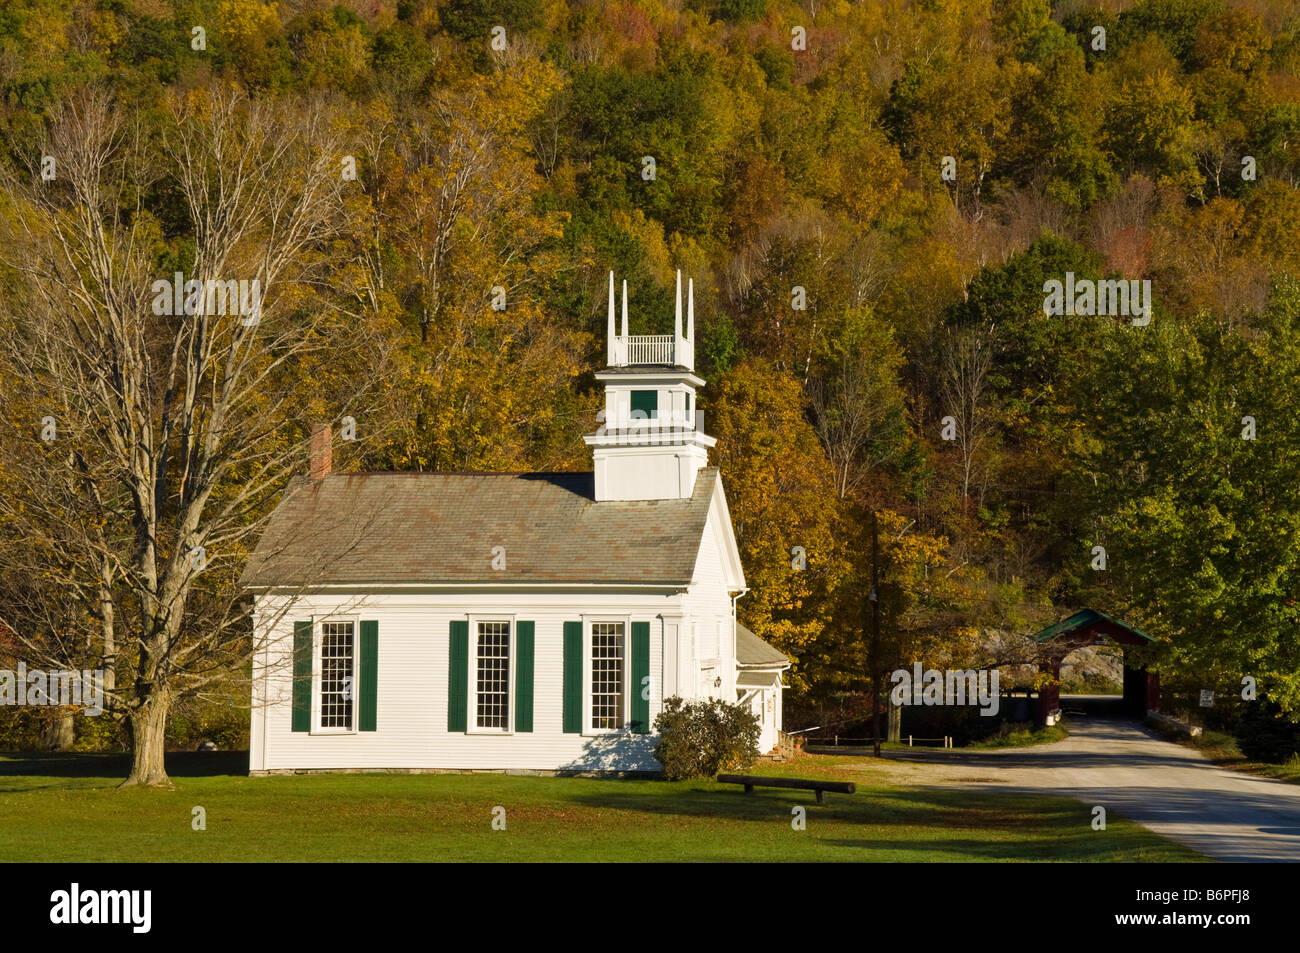 Otoño colores de otoño alrededor de madera blanca tradicional iglesia clapperboard West Arlington Vermont ESTADOS UNIDOS Estados Unidos de América Foto de stock